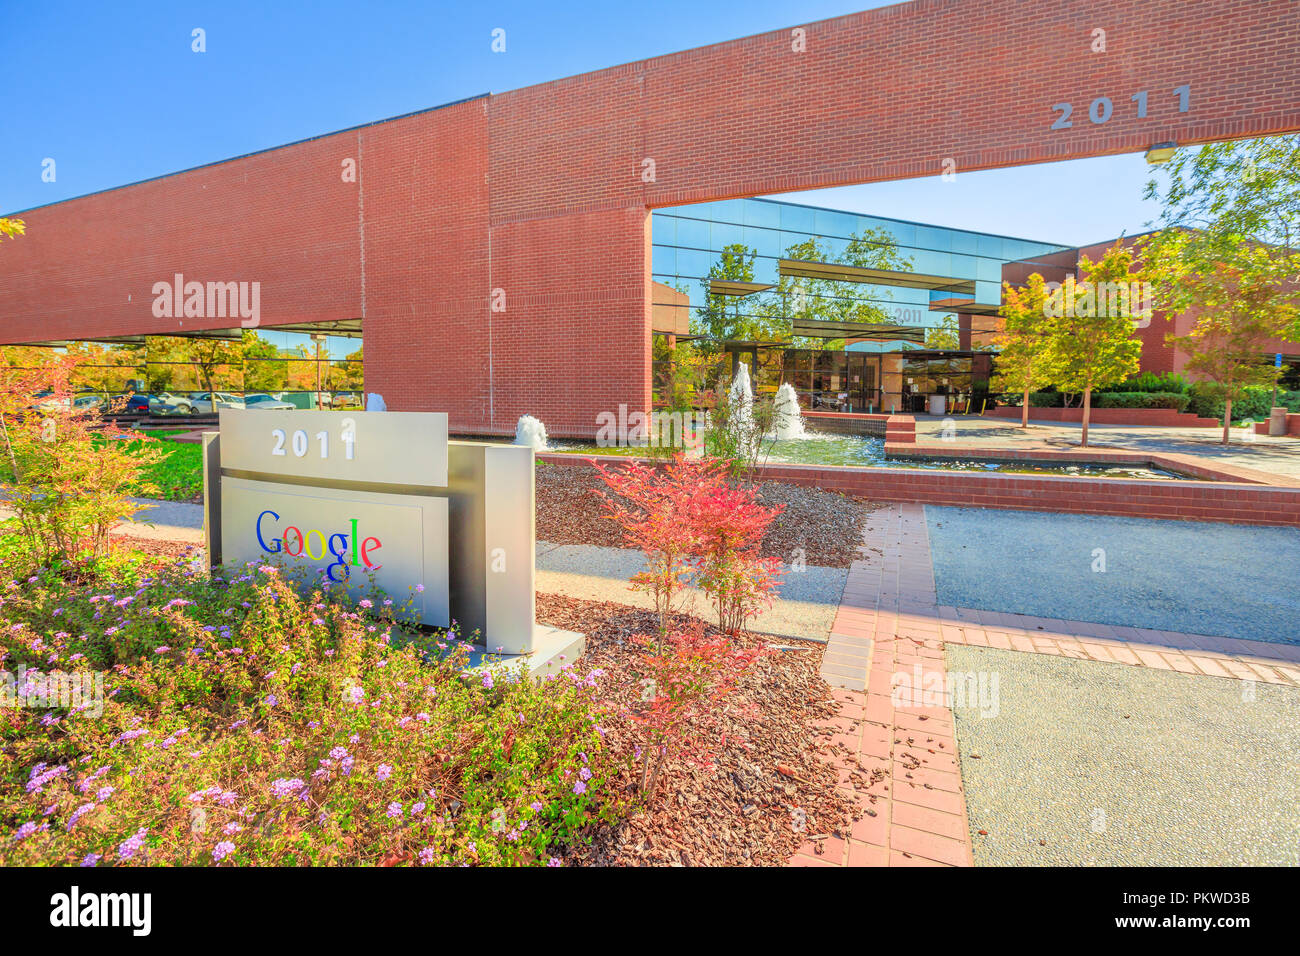 Mountain View, Californie, USA - 13 août 2018 : Nouveau Google bureaux au Parc Technologique des rives, 2011 Stierlin Court.Le géant de la Silicon Valley a de nombreux bâtiments situés dans la baie de San Francisco Banque D'Images